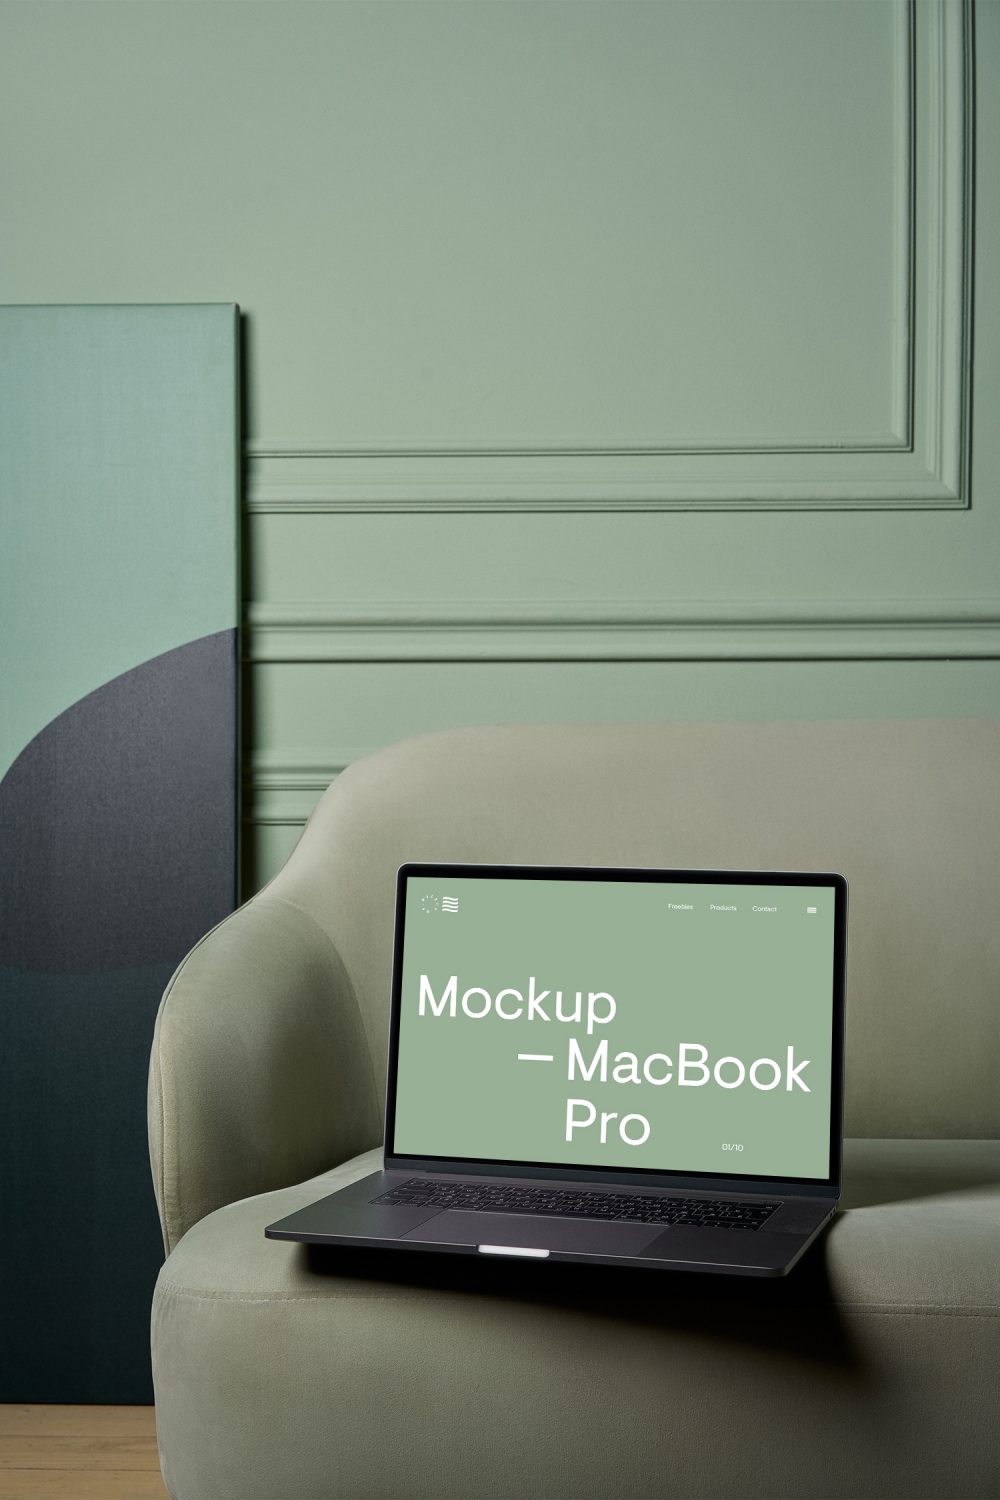 MacBook Pro sur une maquette de canapé